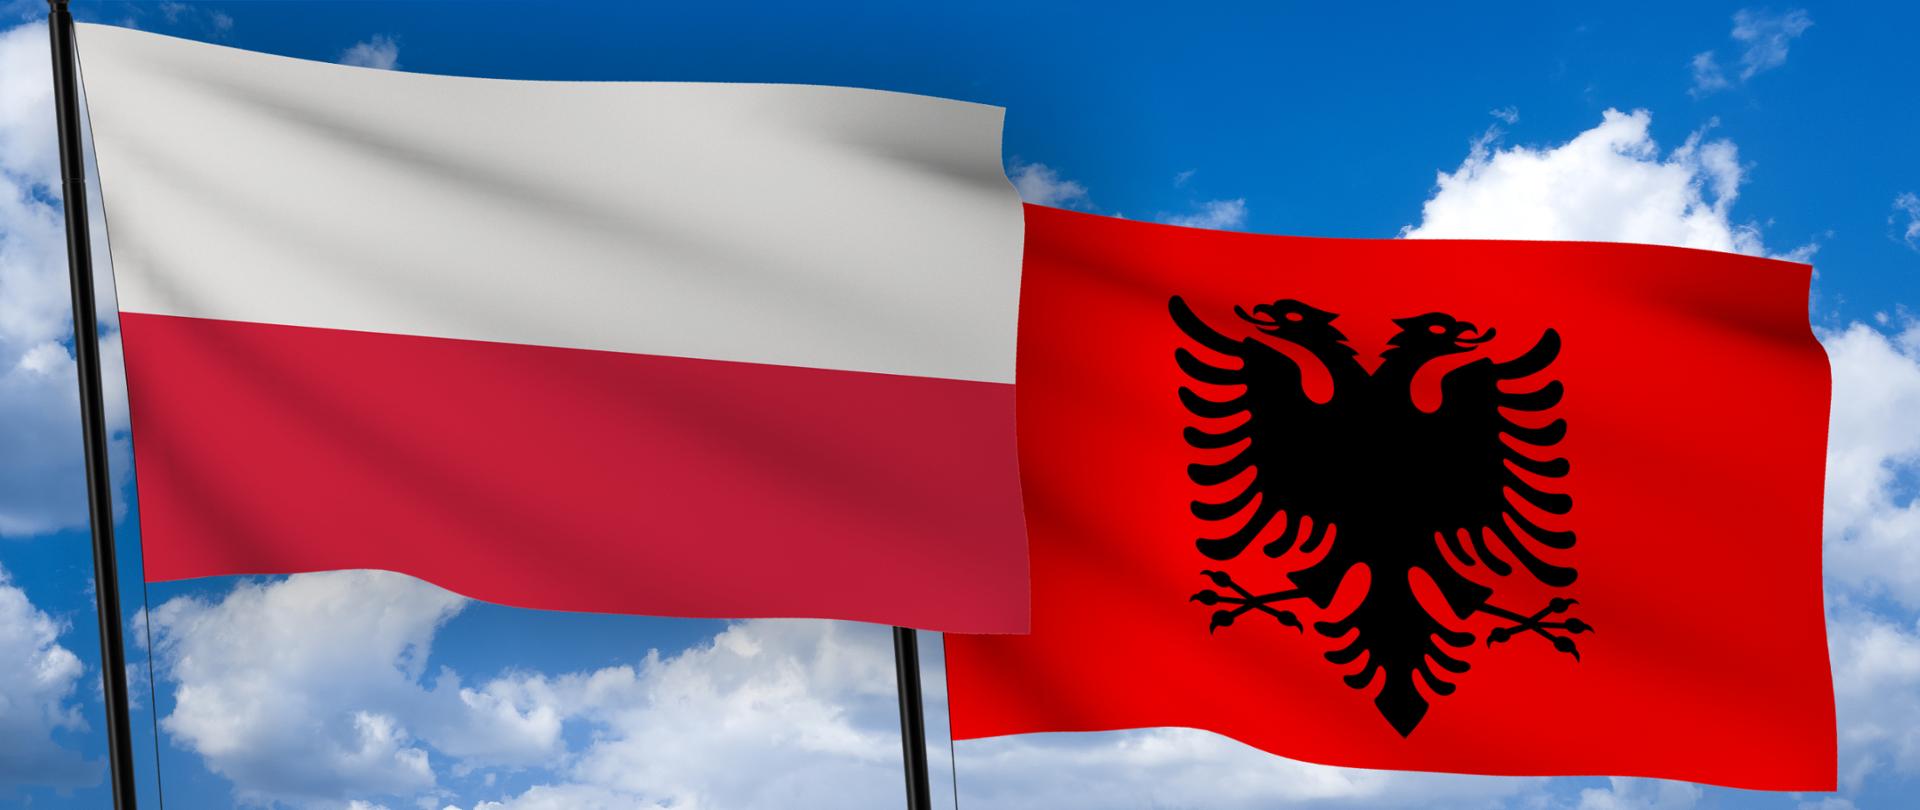 Oświadczenie Pełnomocnika Rządu ds. Cyberbezpieczeństwa dotyczące ataków cybernetycznych wymierzonych w Albanię